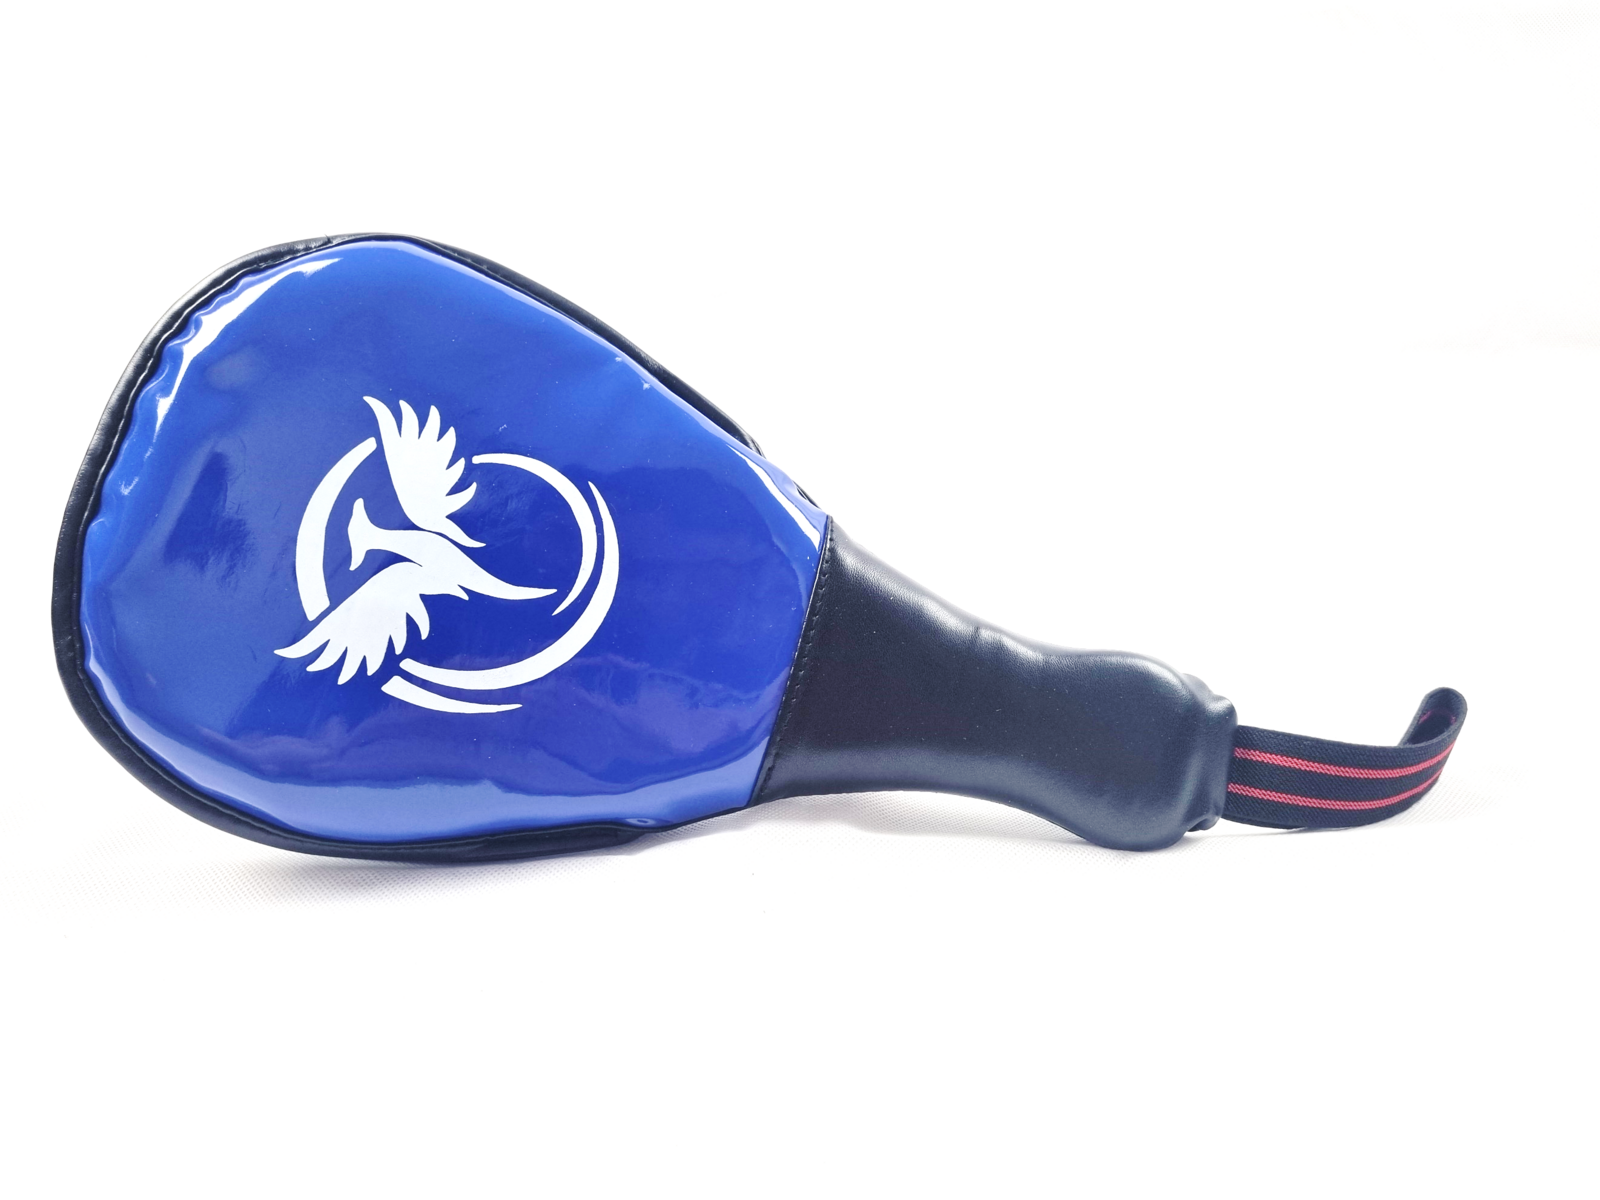 CSG - Pang Pang/Mini Paddle - Blue